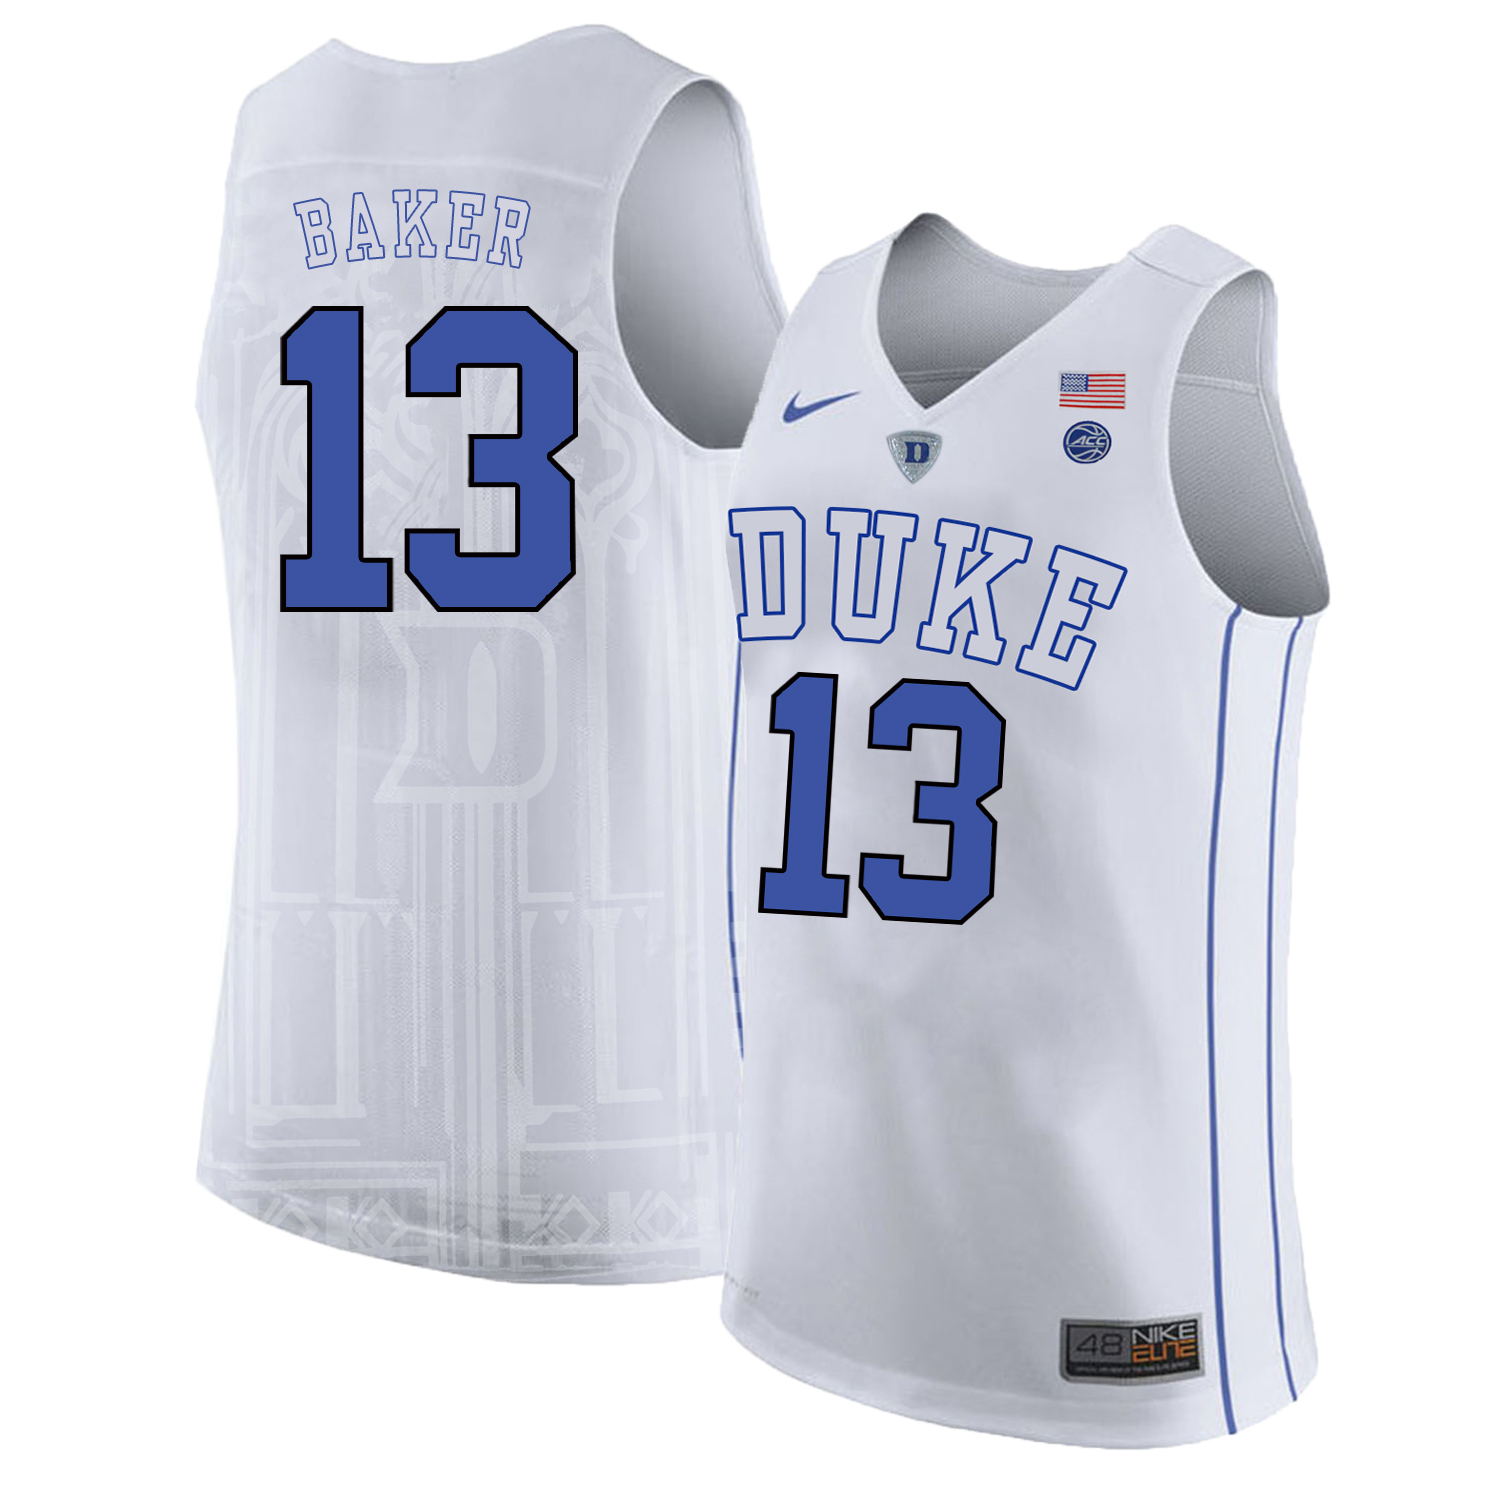 Duke Blue Devils 13 Joey Baker White Nike College Basketball Jersey